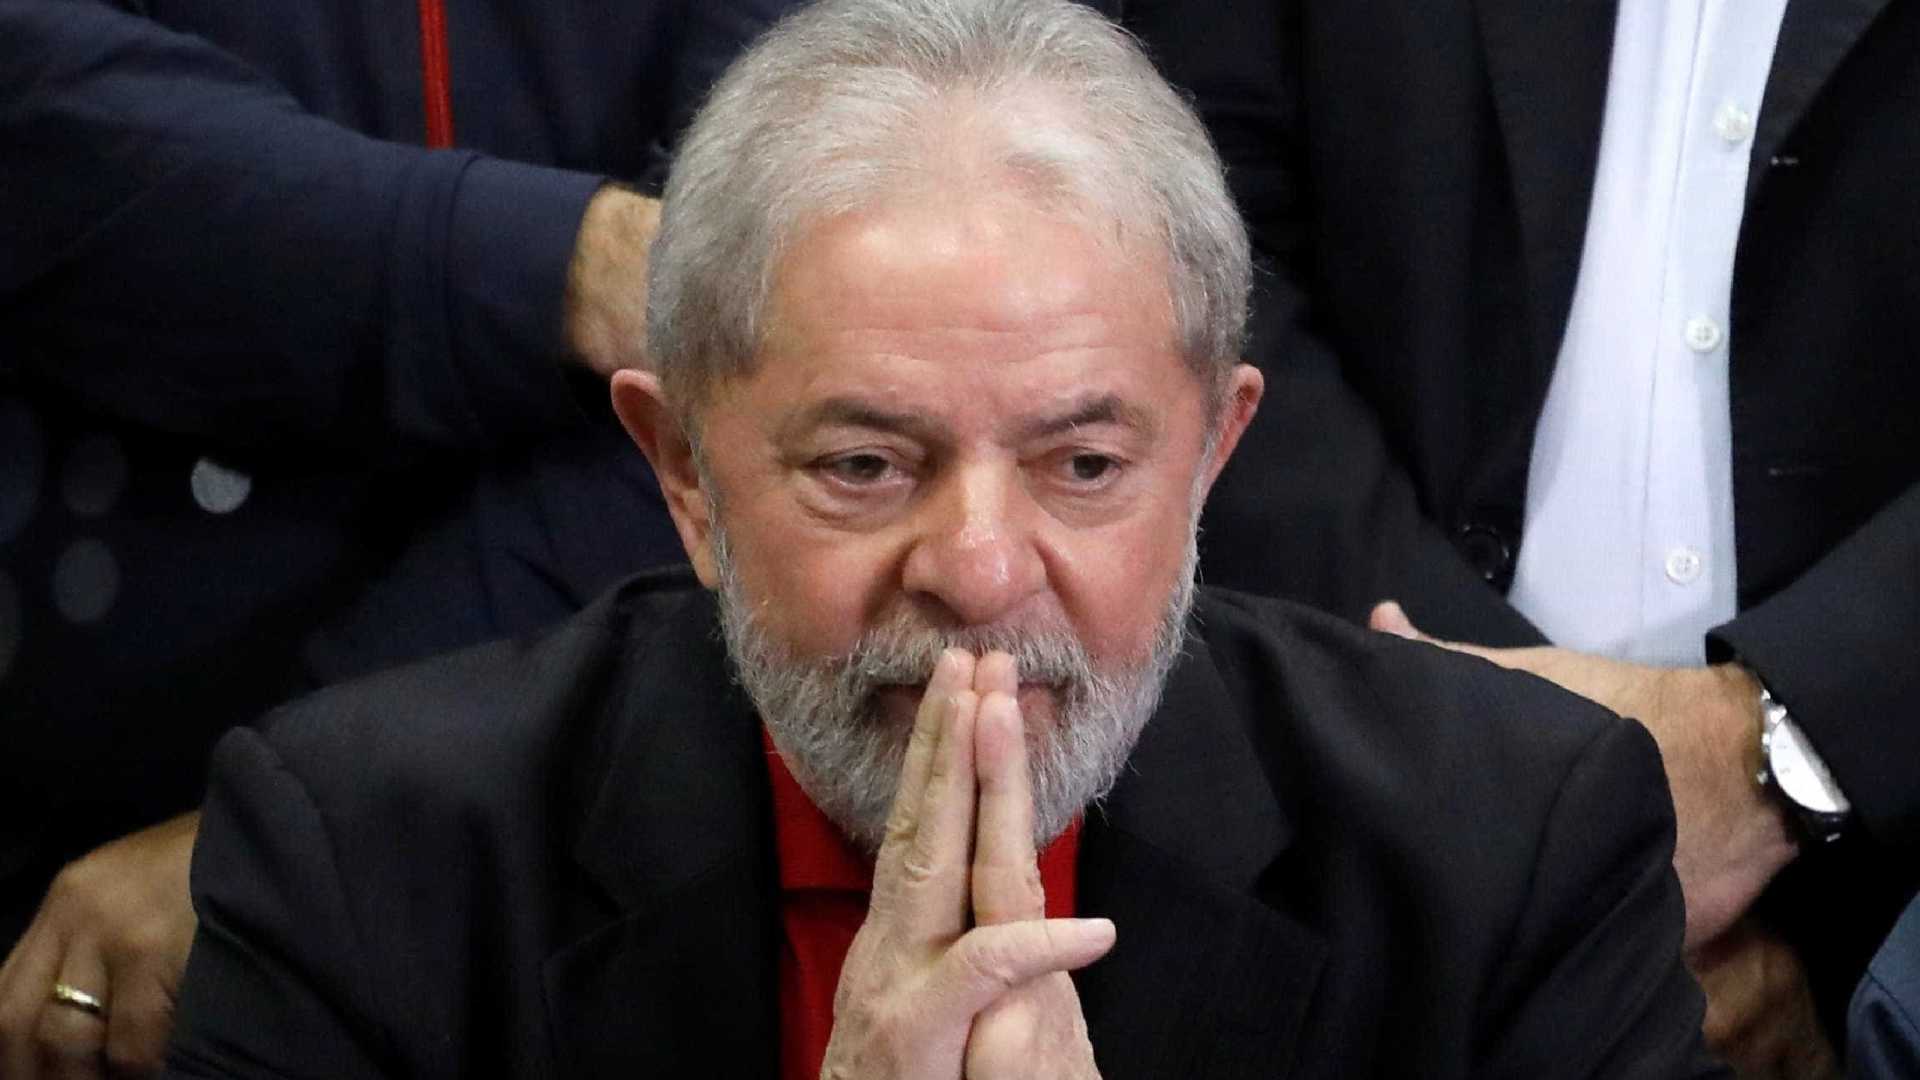 Defesa de Lula pede liberdade de ex-presidente ao TRF-4